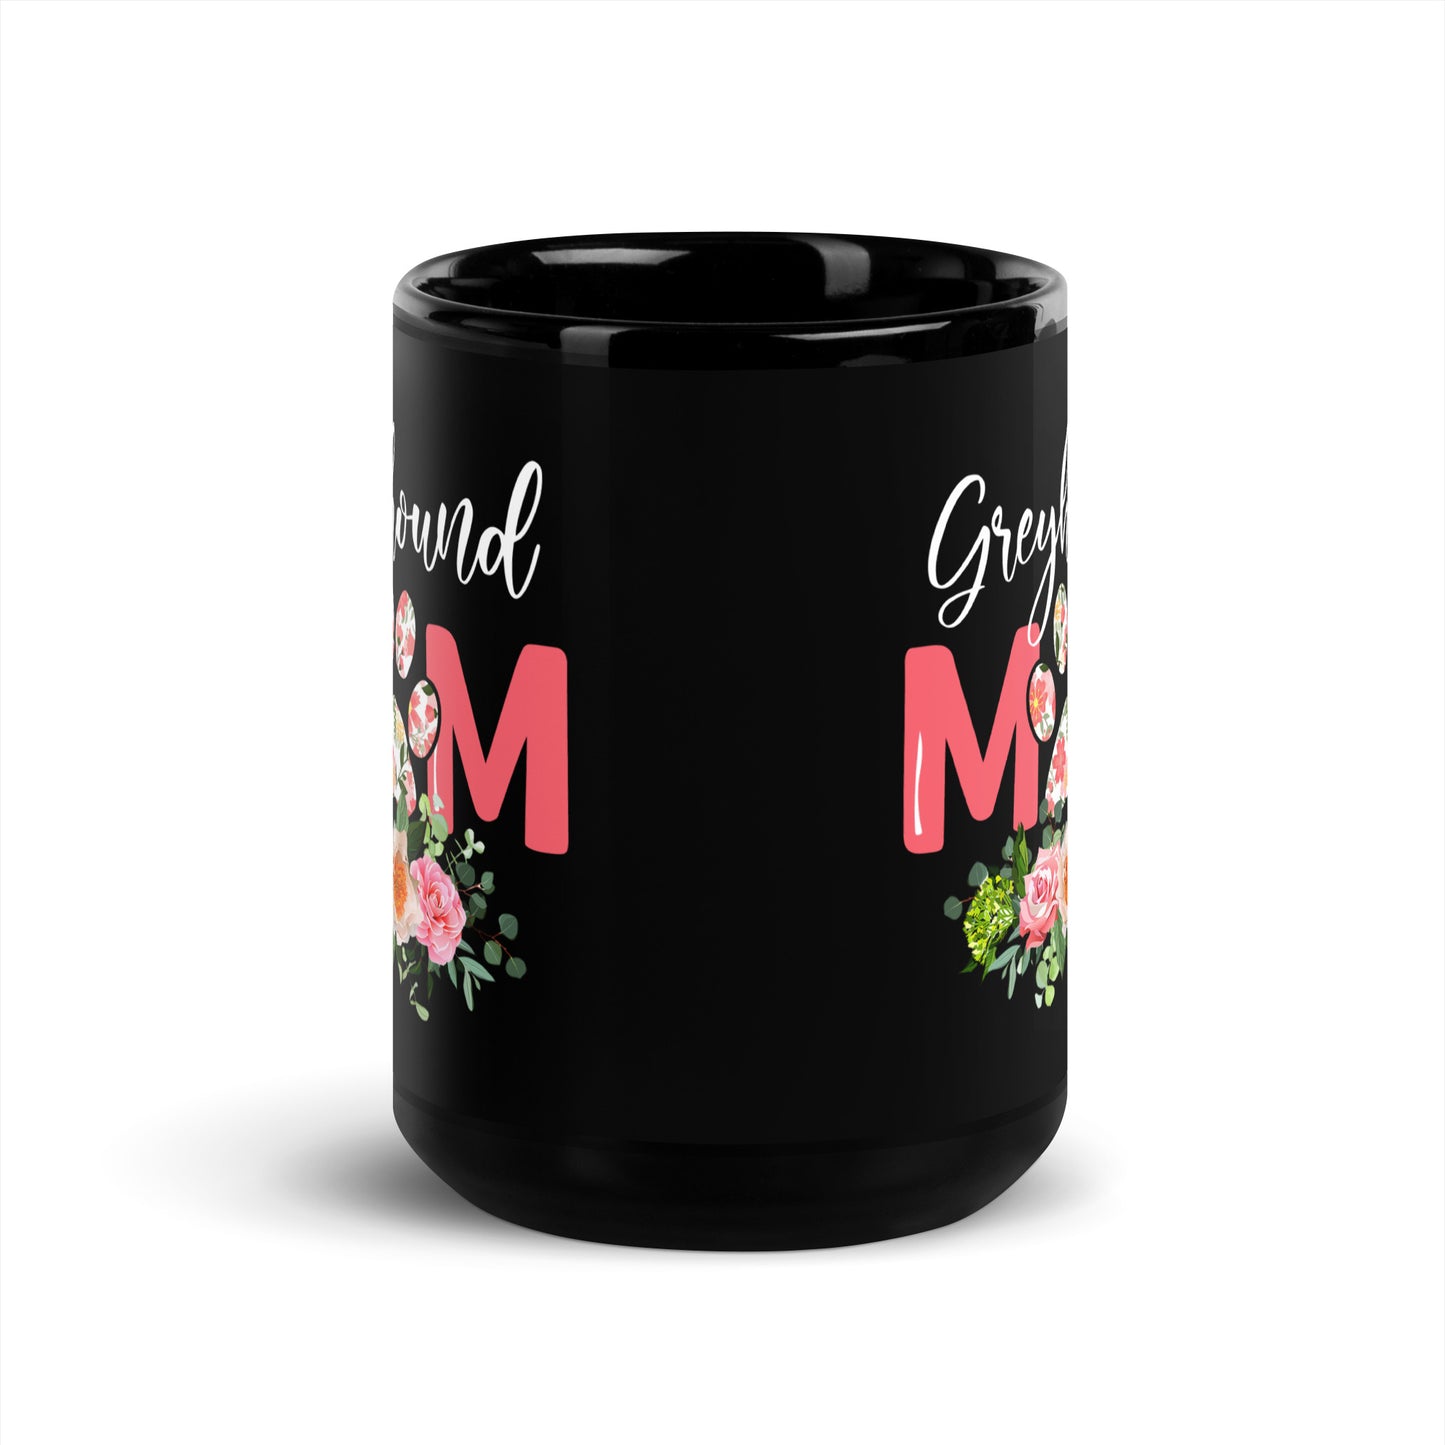 Greyhound Dog Mom Black Glossy Mug